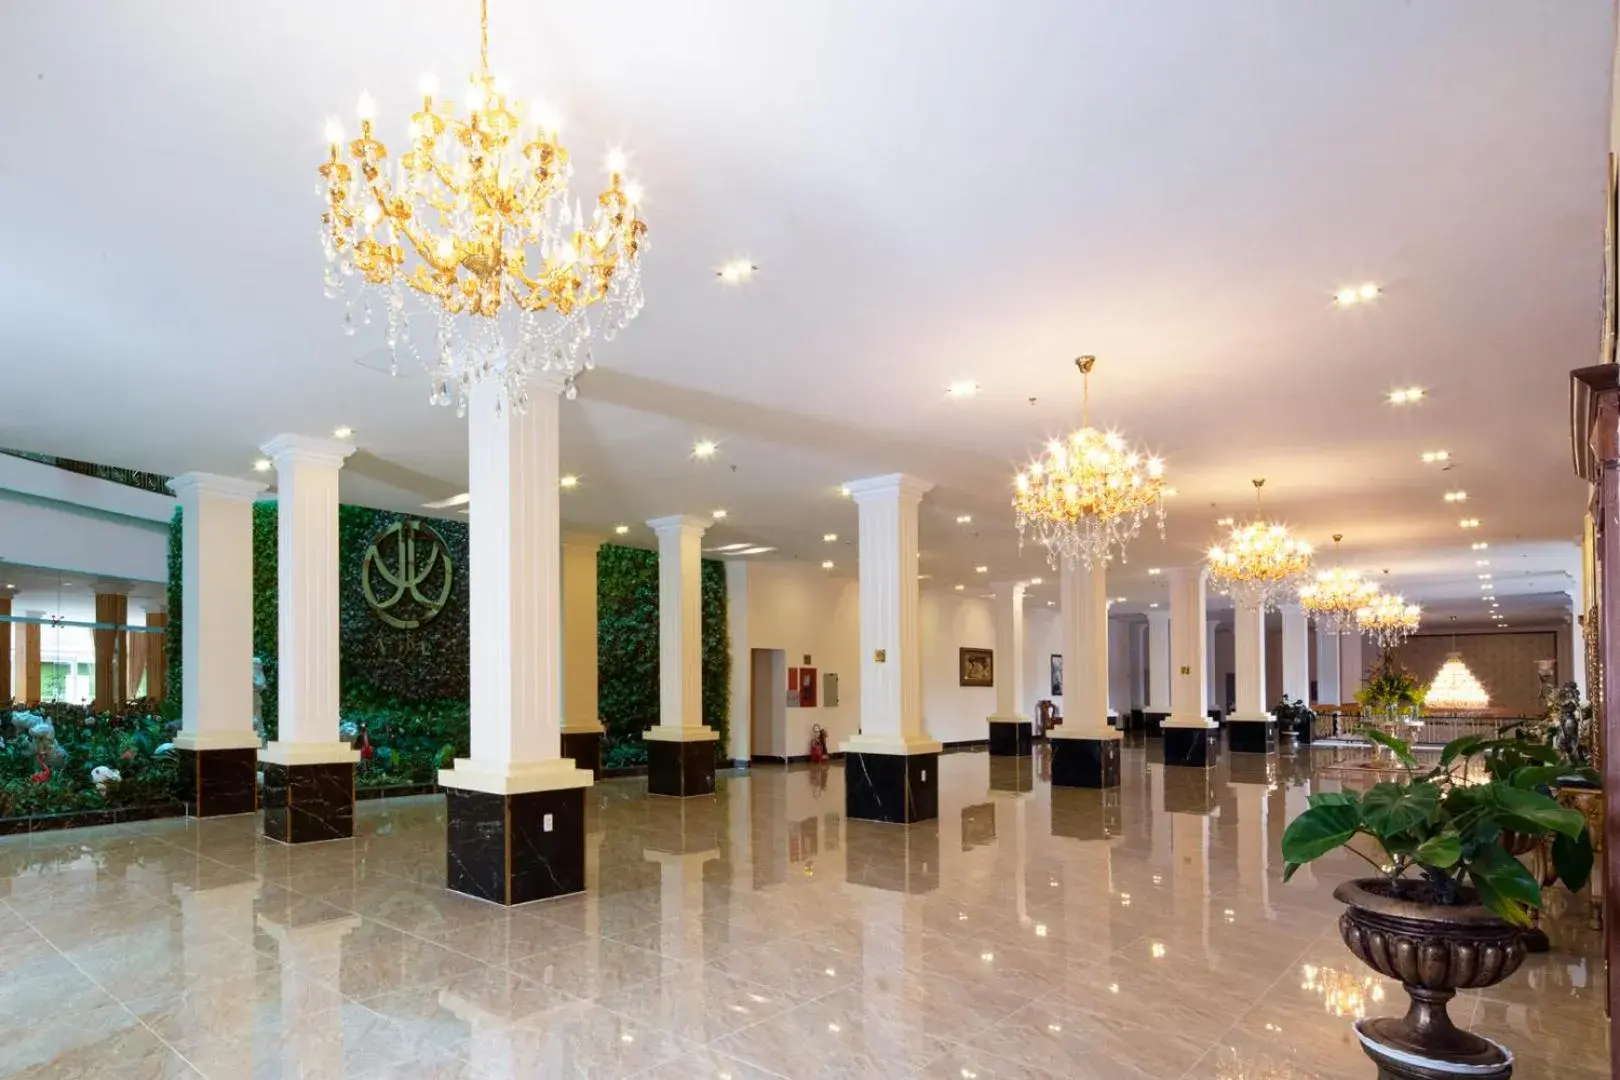 Lobby or reception, Lobby/Reception in Ladalat Hotel